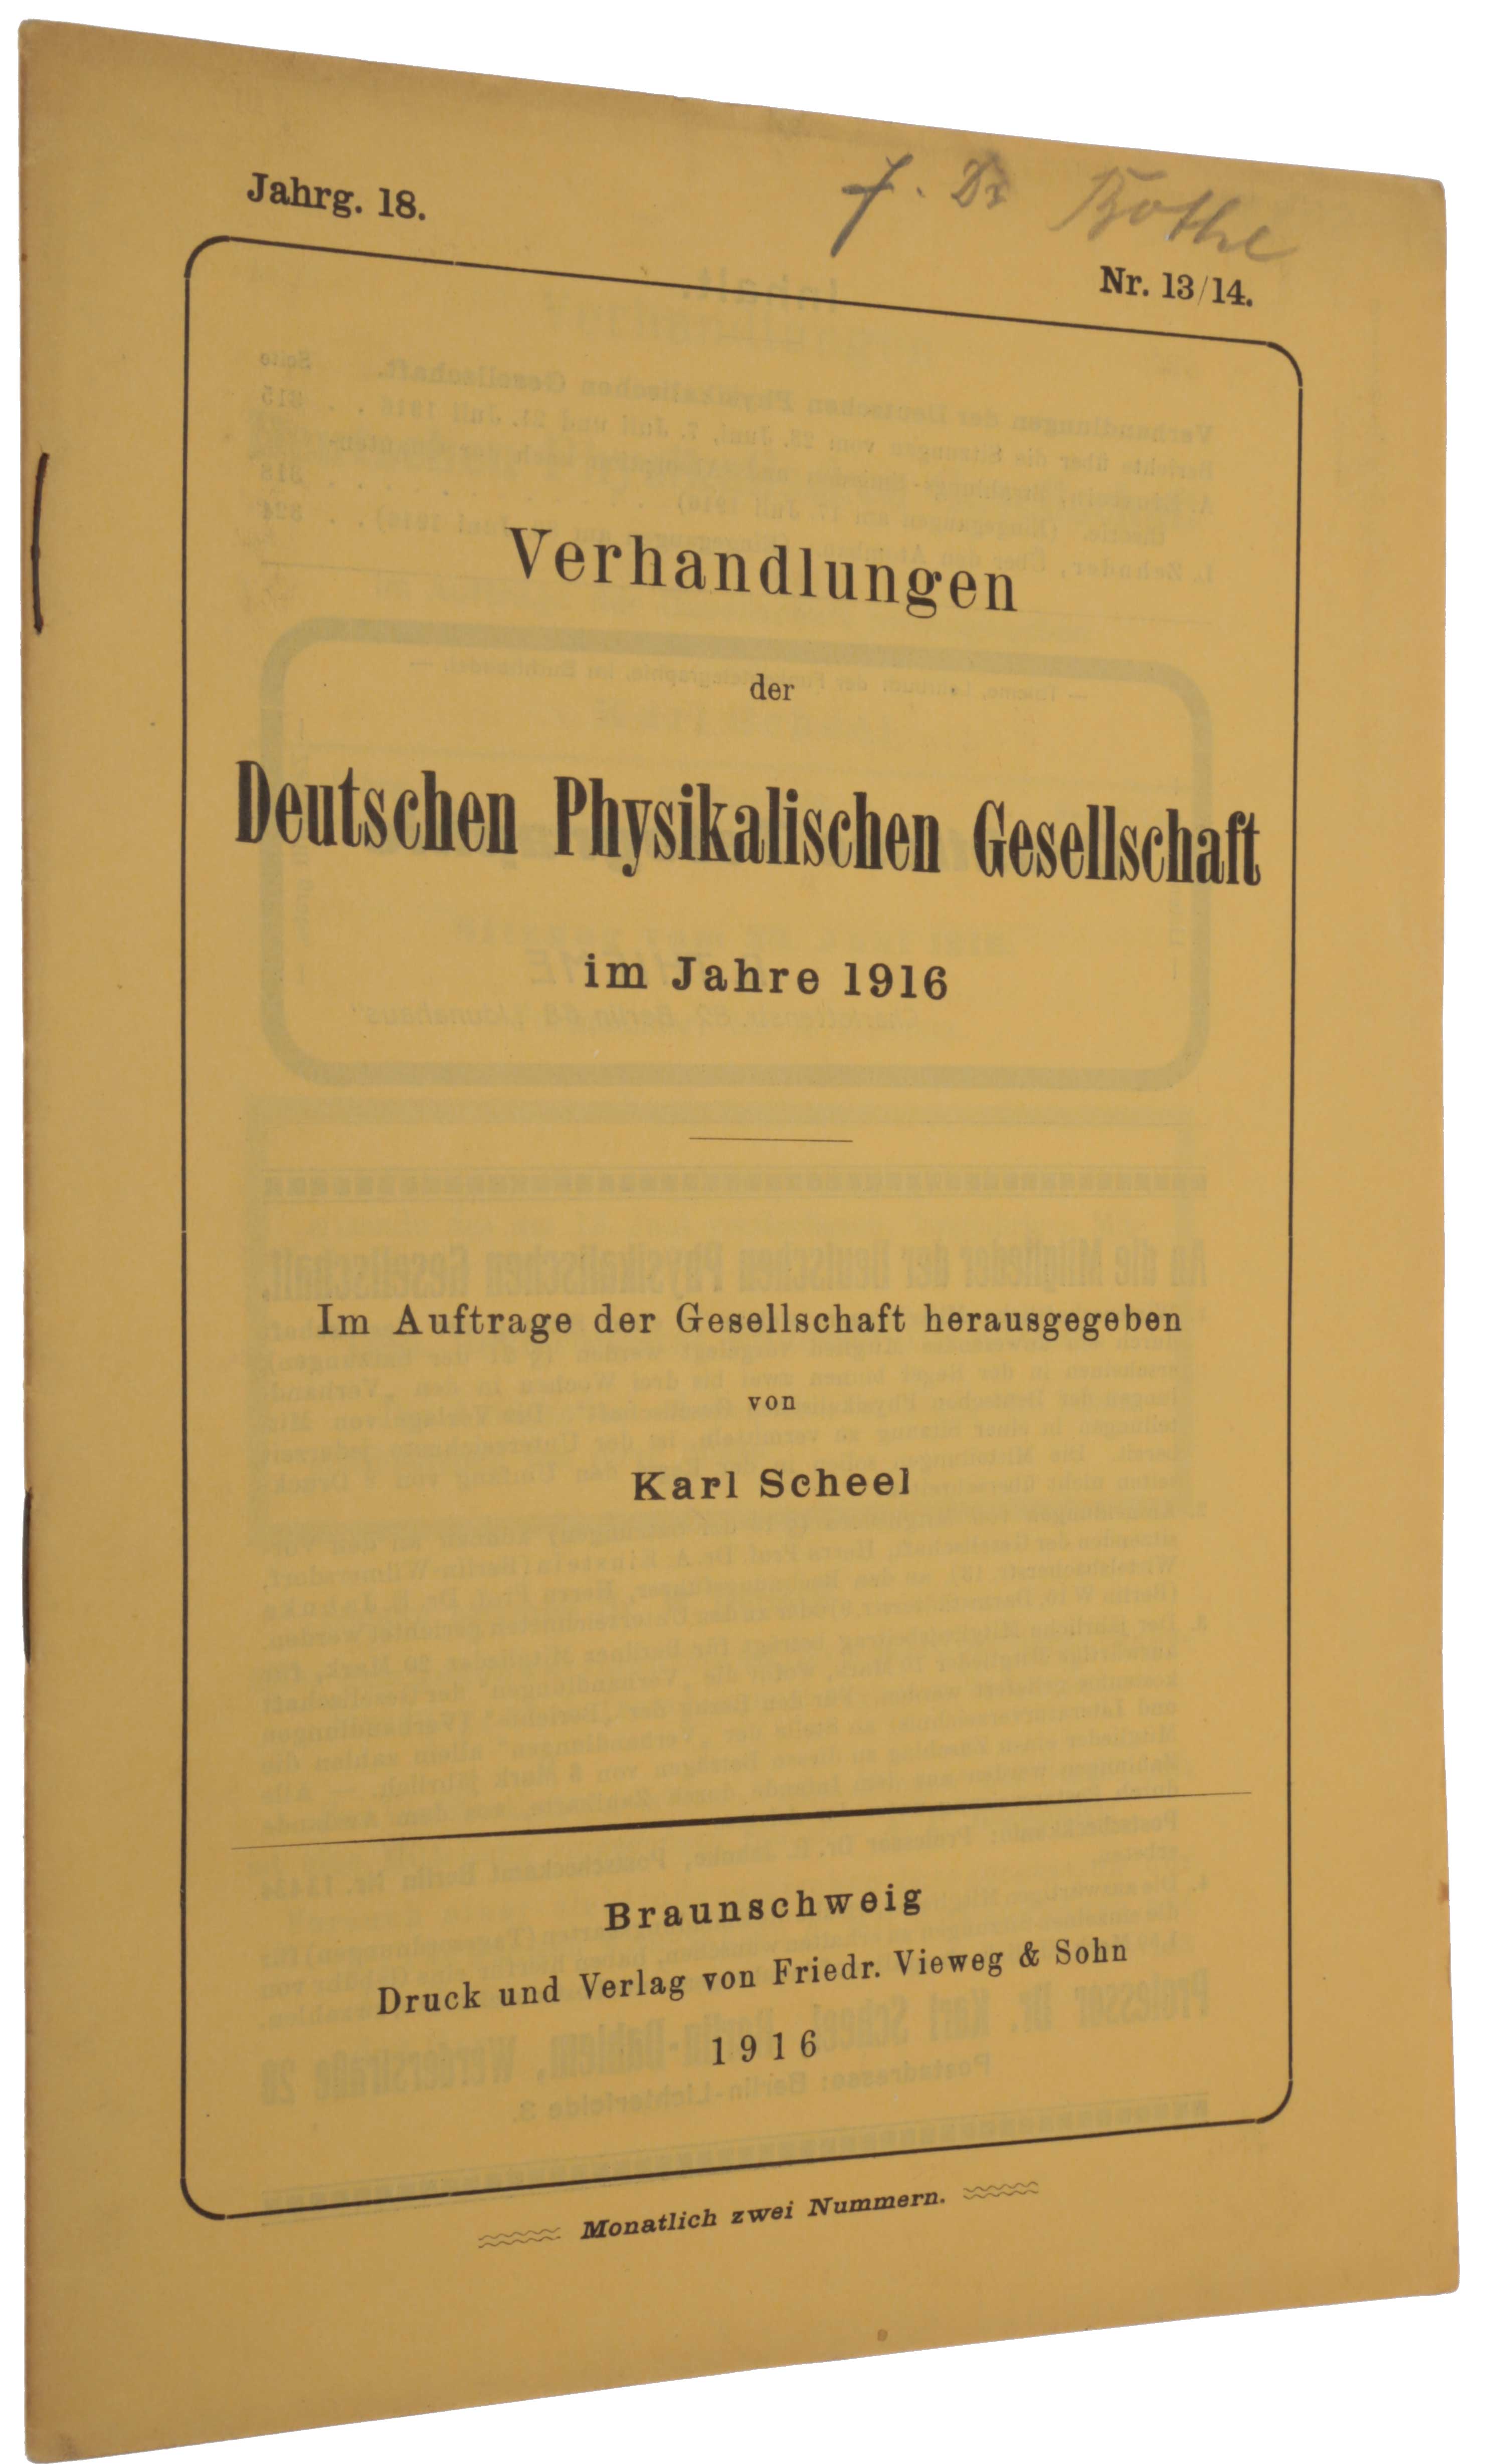 Item #6164 ‘Strahlungs-Emission und Absorption nach der Quantentheorie’, pp. 318-323 in: Verhandlungen der Deutschen Physikalischen Gesellschaft, Jahrg. 18, Nr. 13/14, 30 July 1916. Albert EINSTEIN.